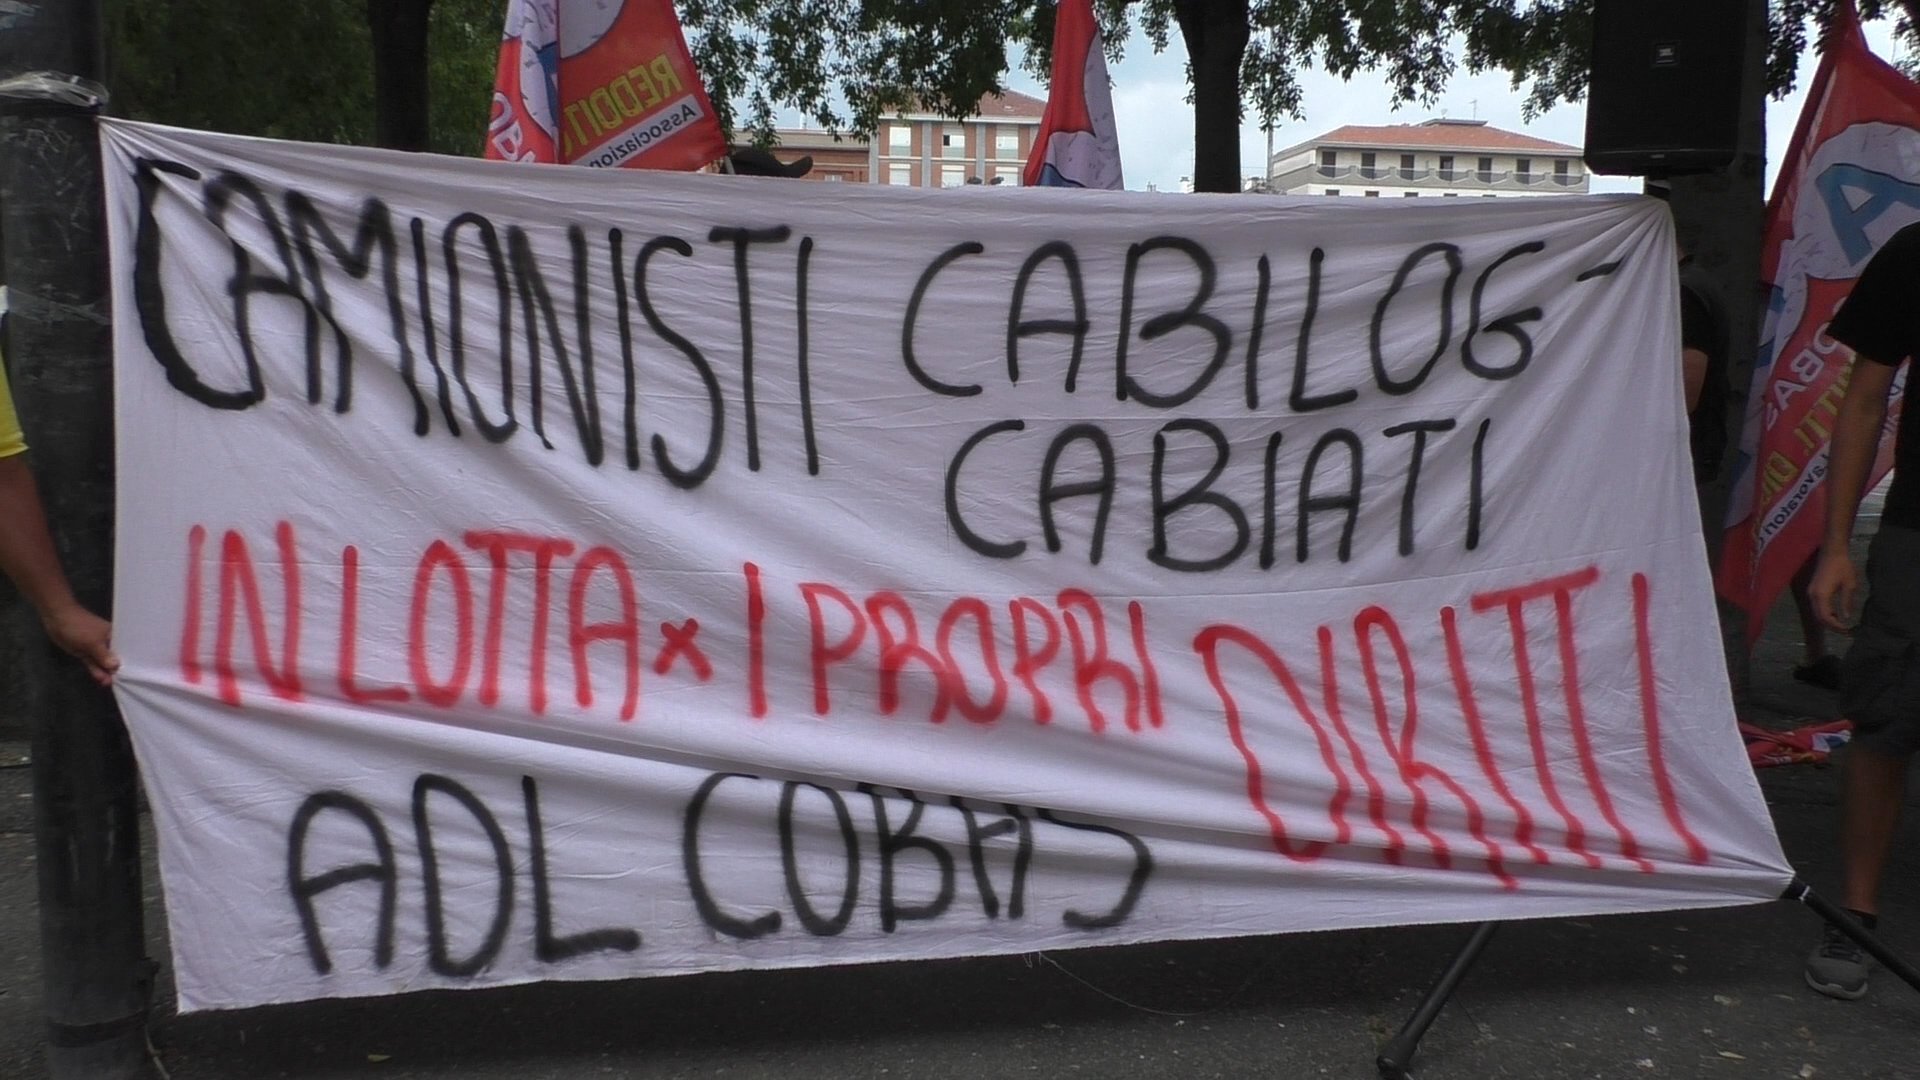 Cabilog Cabiati di Occimiano: trattativa sindacale saltata. Lavoratori pronti al blocco totale